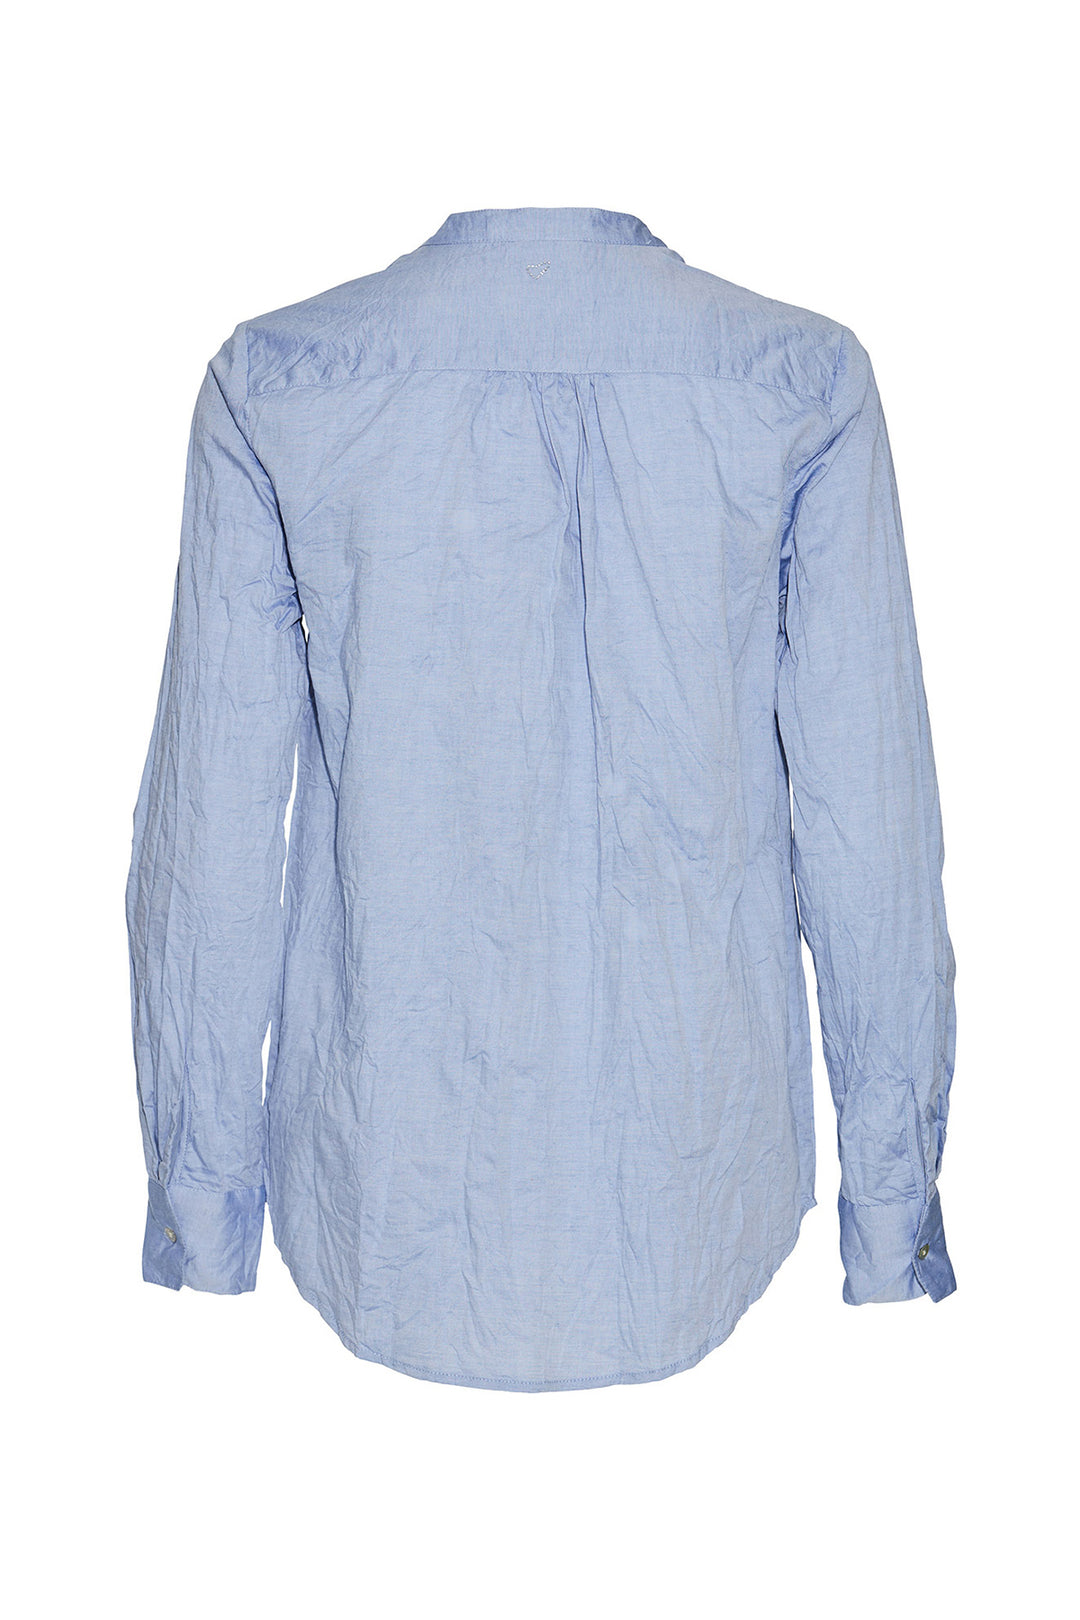 Heartmade Maple shirt HM SHIRTS 21 Light blue